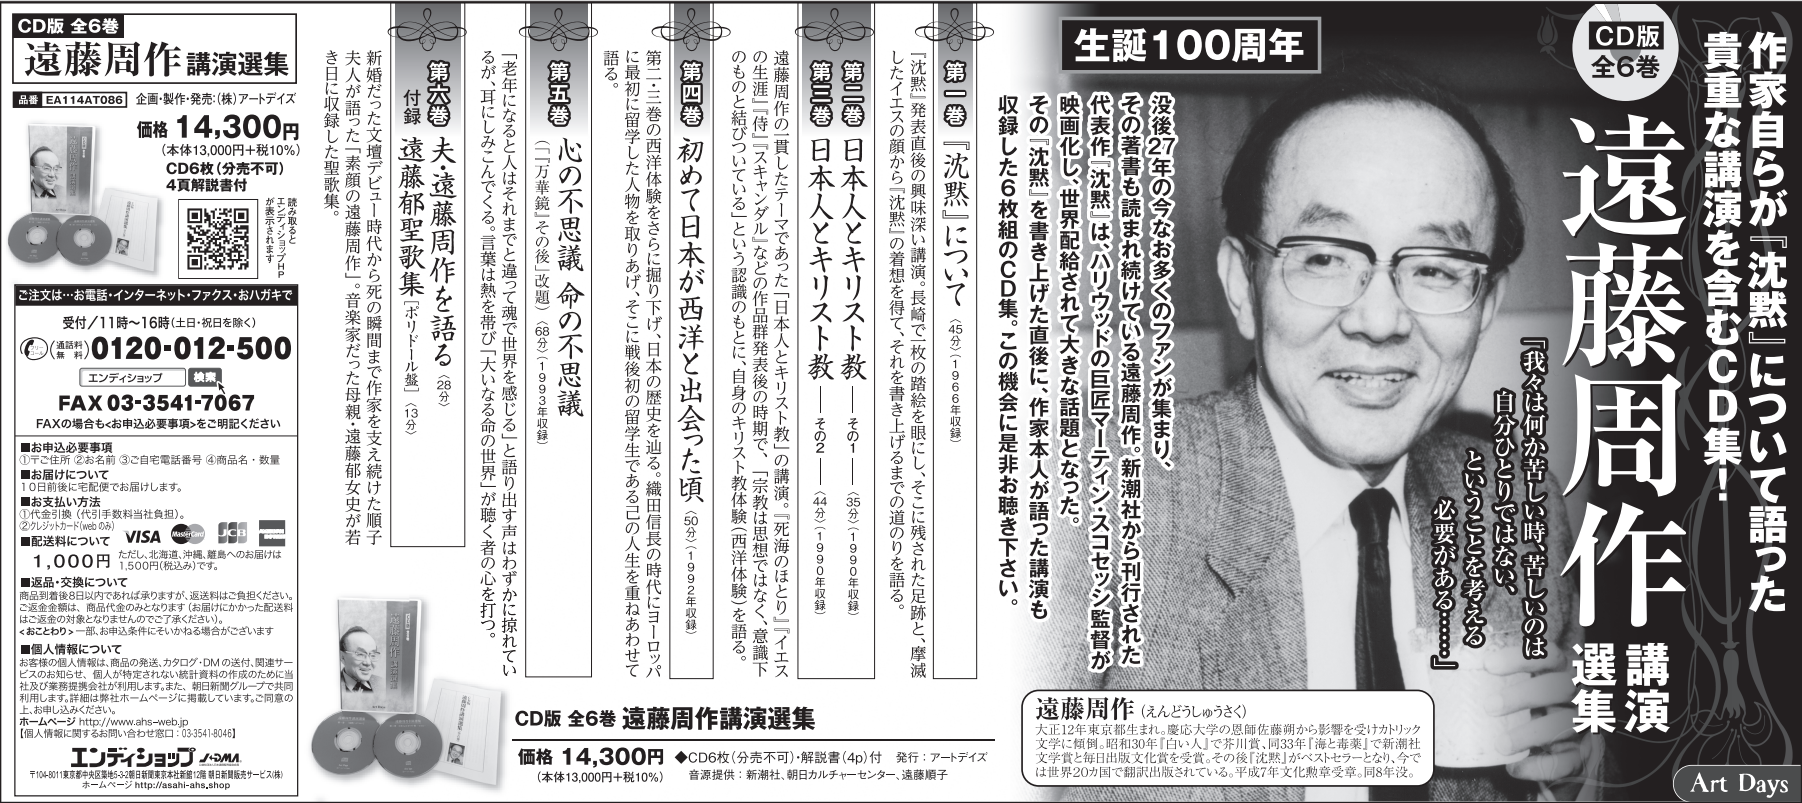 CD集『遠藤周作講演選集』の広告を朝日新聞に掲載しました。（2月20日東京夕刊、23日地方統合版）。